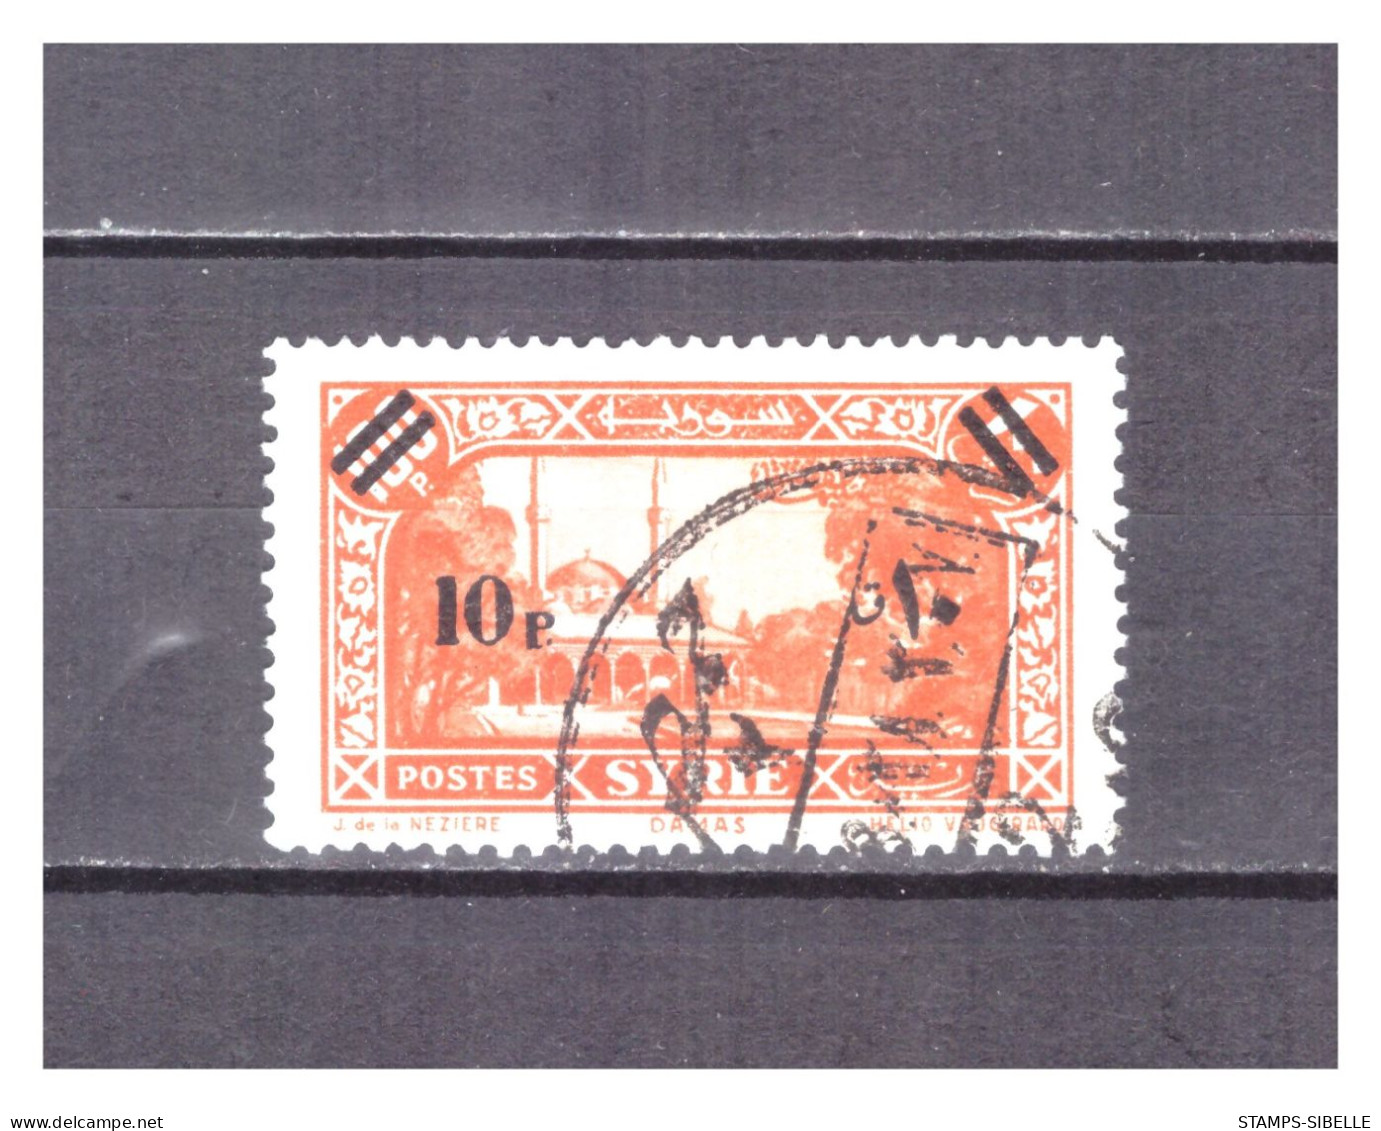 SYRIE   N °  246   .  10 Pi   SUR   100 Pi        OBLITERE  .  SUPERBE  . - Used Stamps